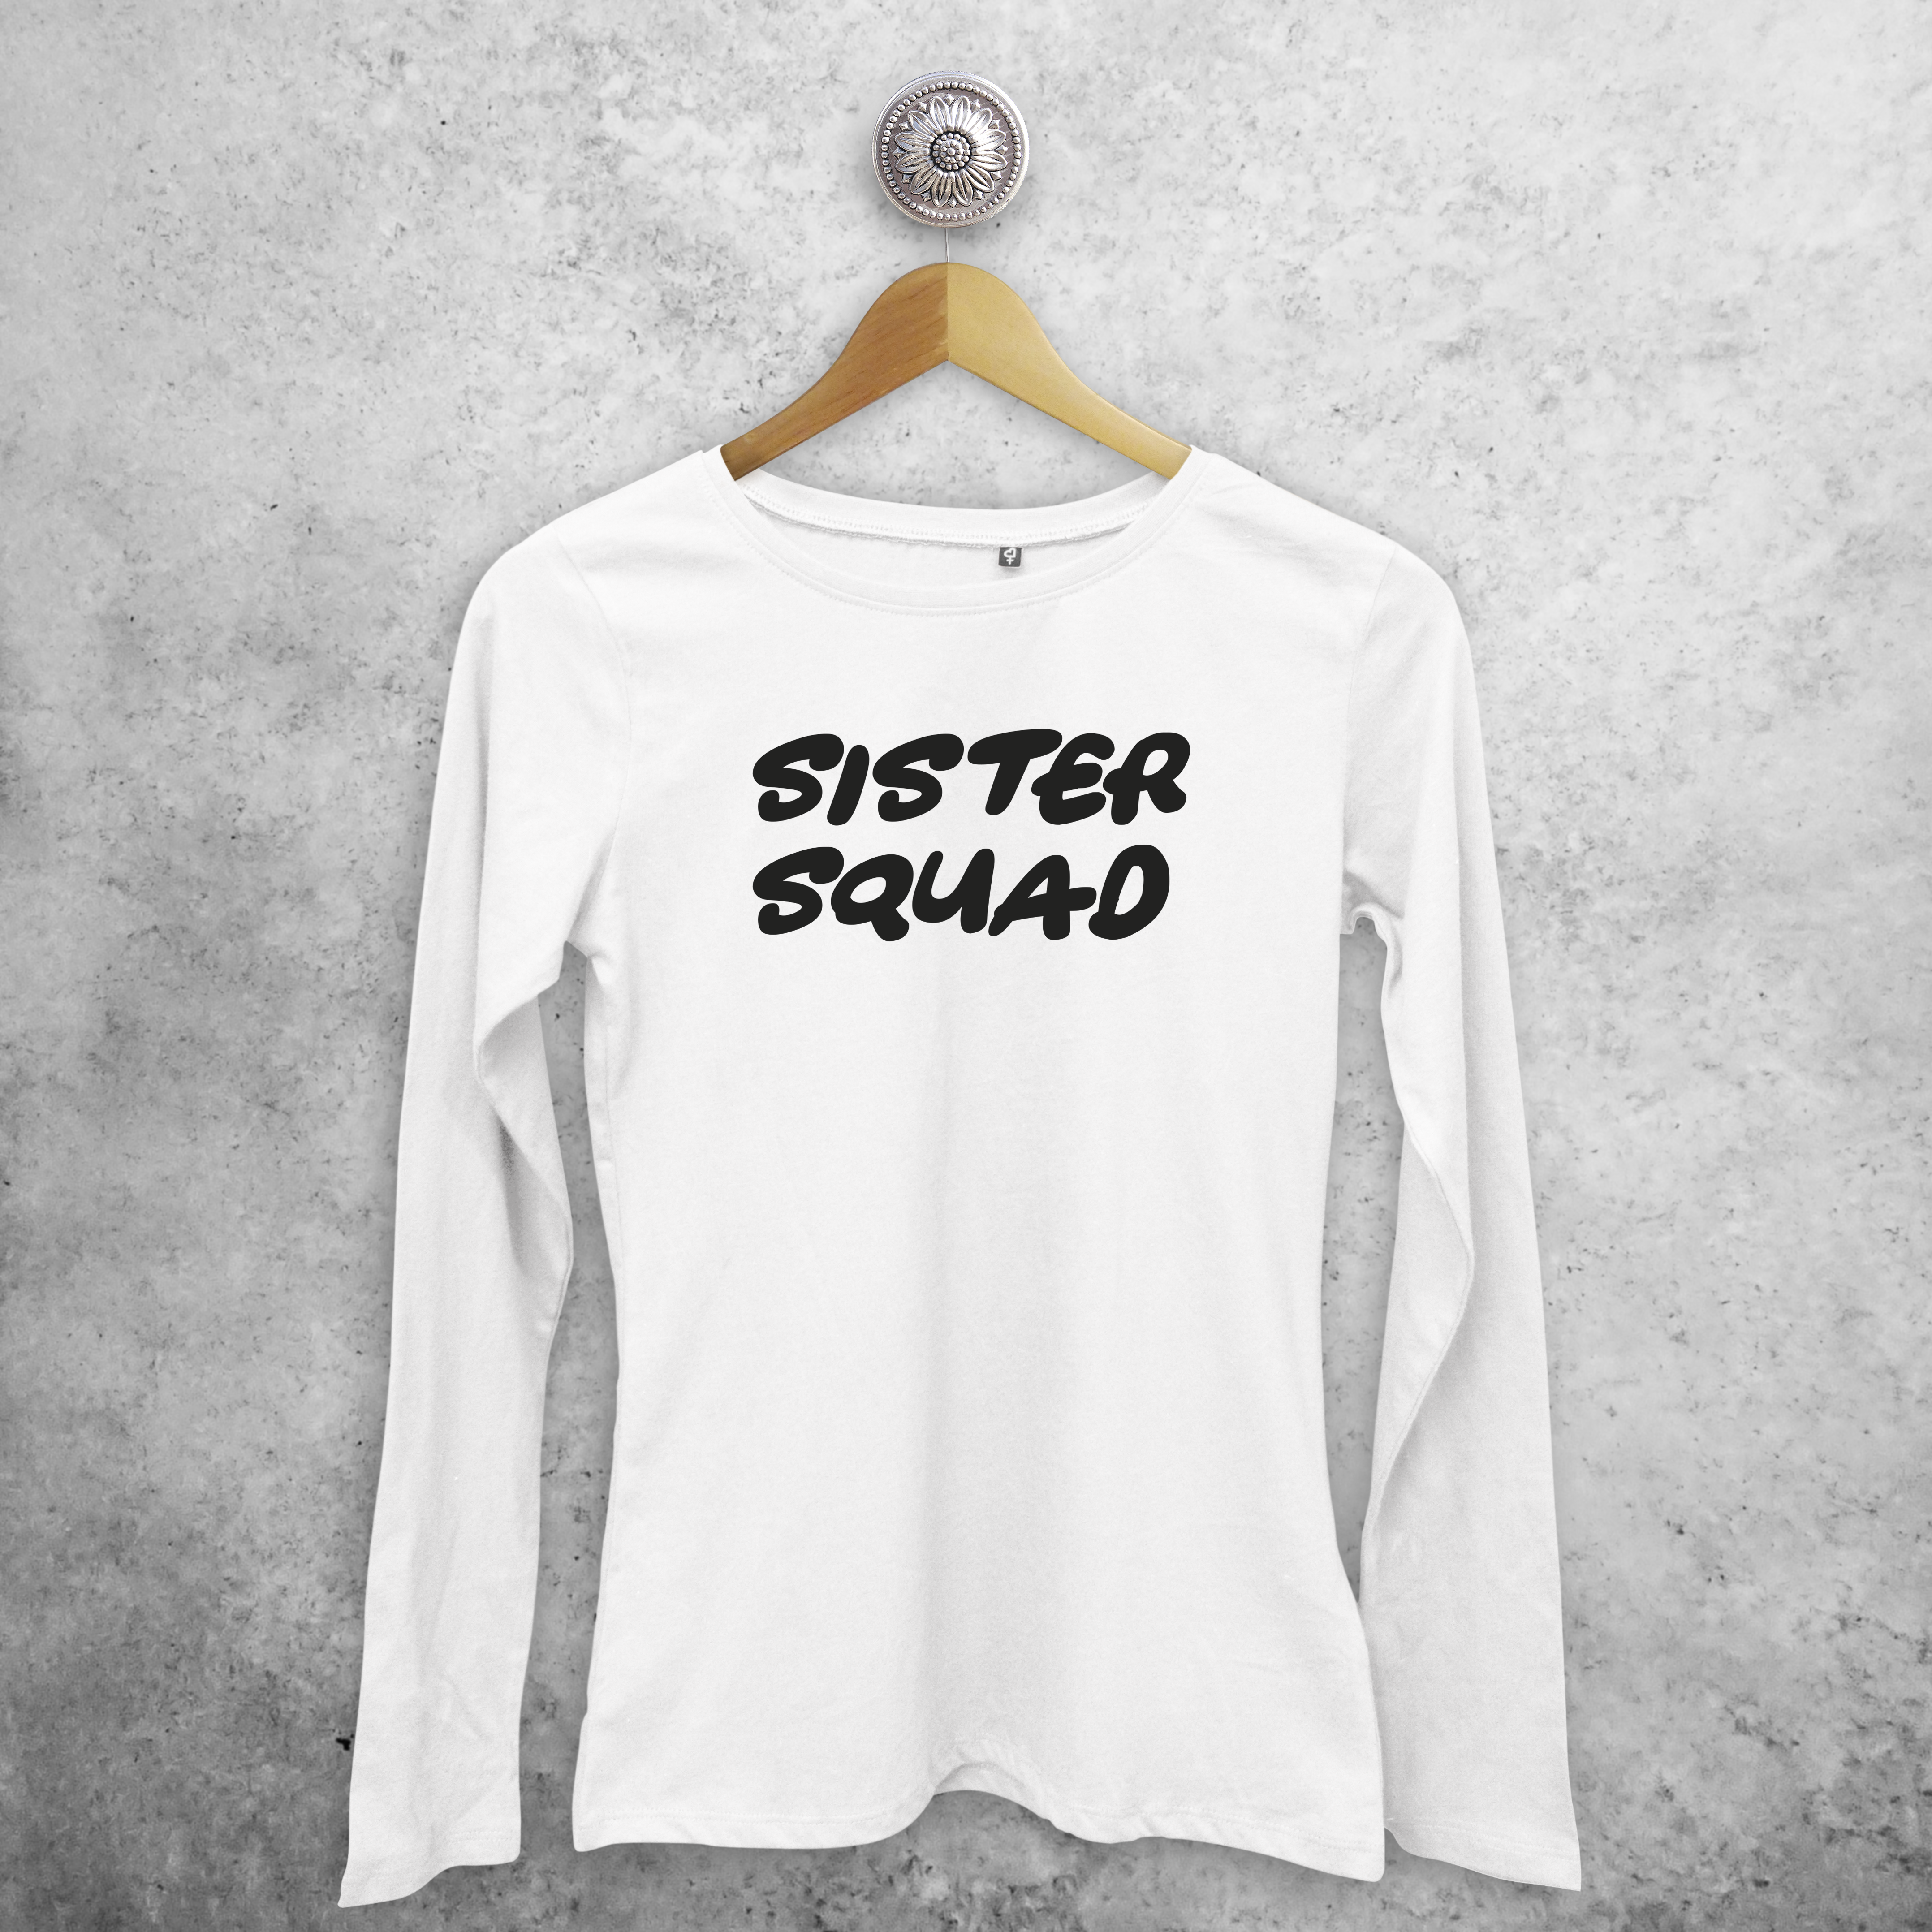 'Sister squad' adult longsleeve shirt